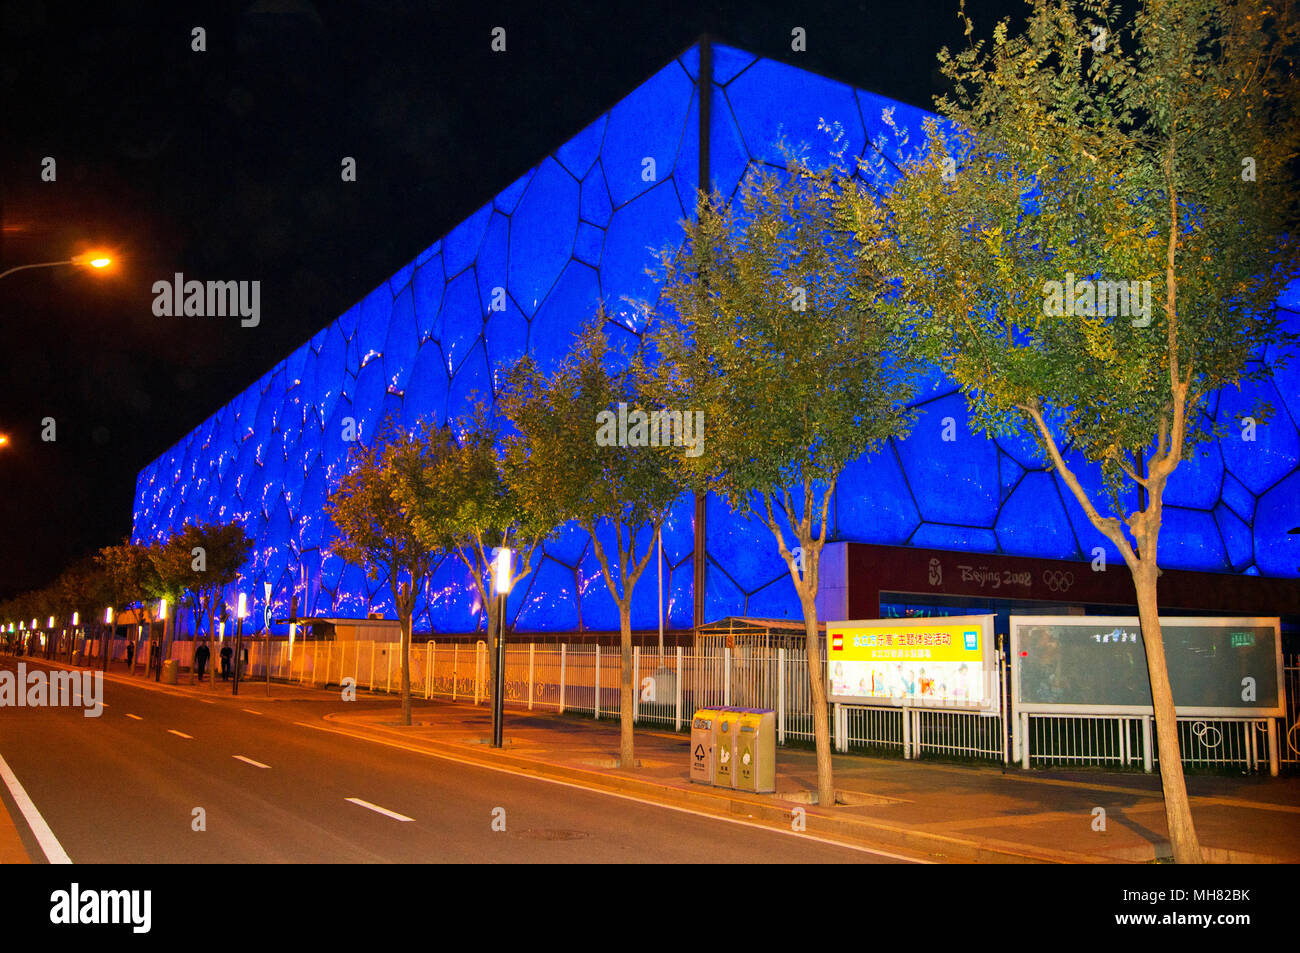 Die Pekinger National Aquatics Centre, umgangssprachlich als Water Cube bekannt, im Olympischen Park in Peking, China, fotografiert in der Nacht. Stockfoto